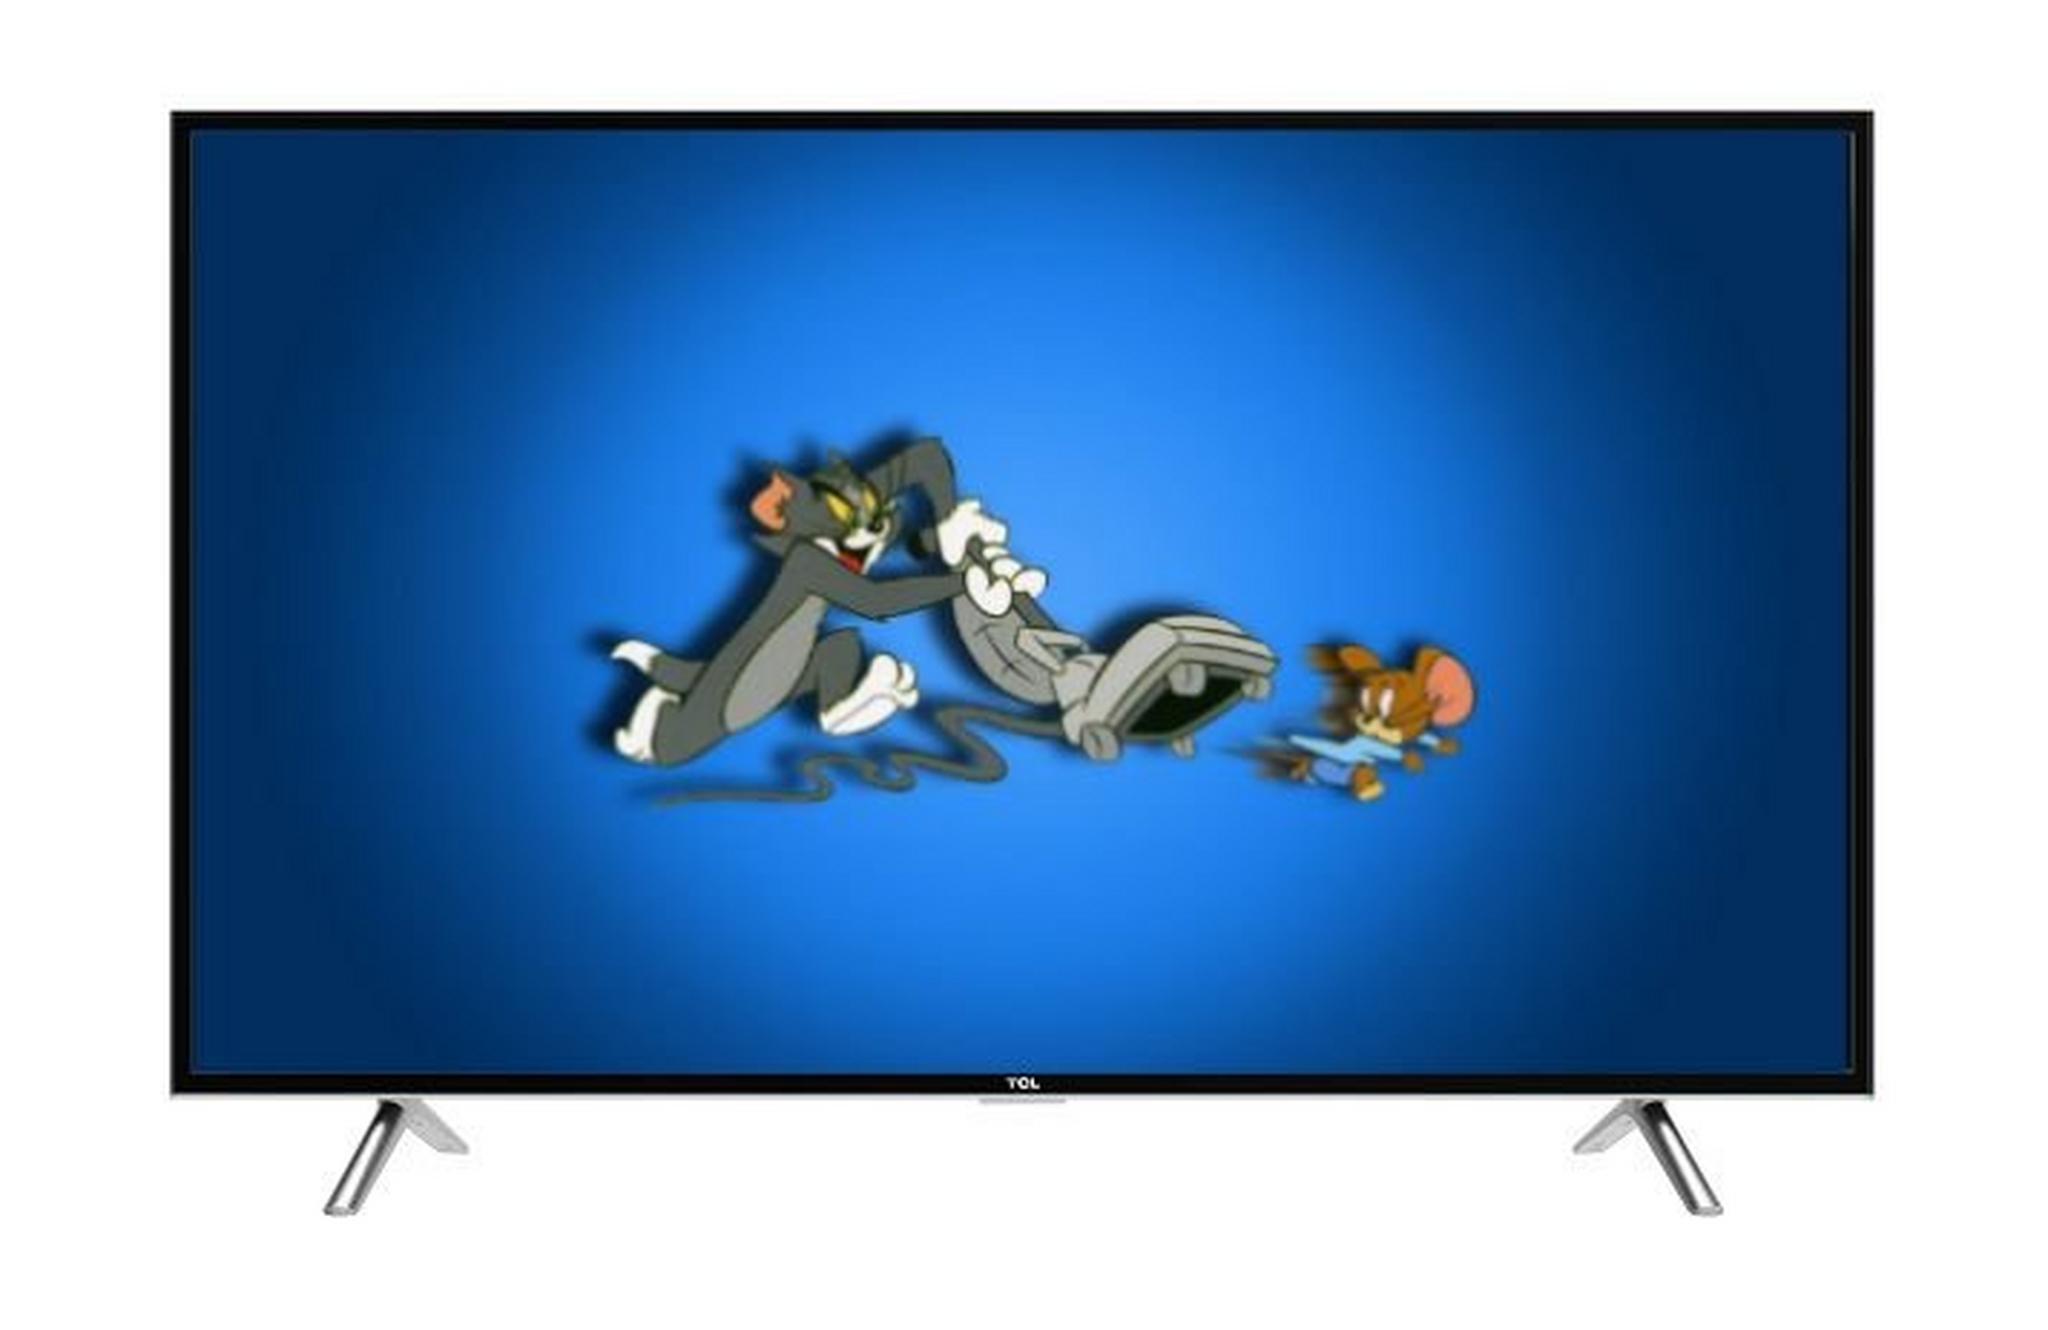 TCL 49 inch Full HD Smart LED TV - L49D2900